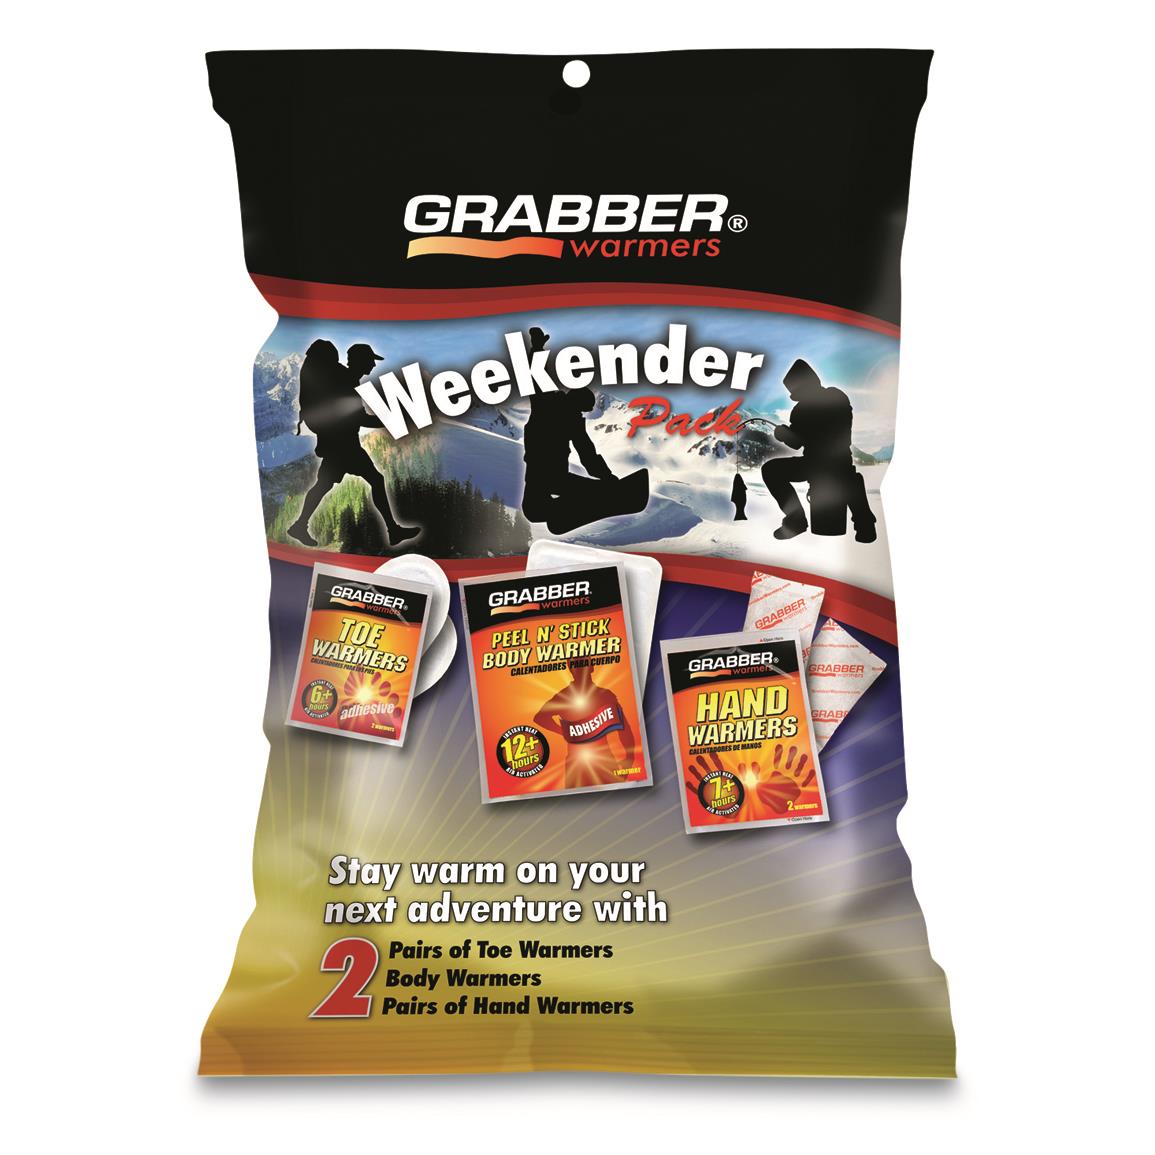 Grabber Warmers Weekender Pack